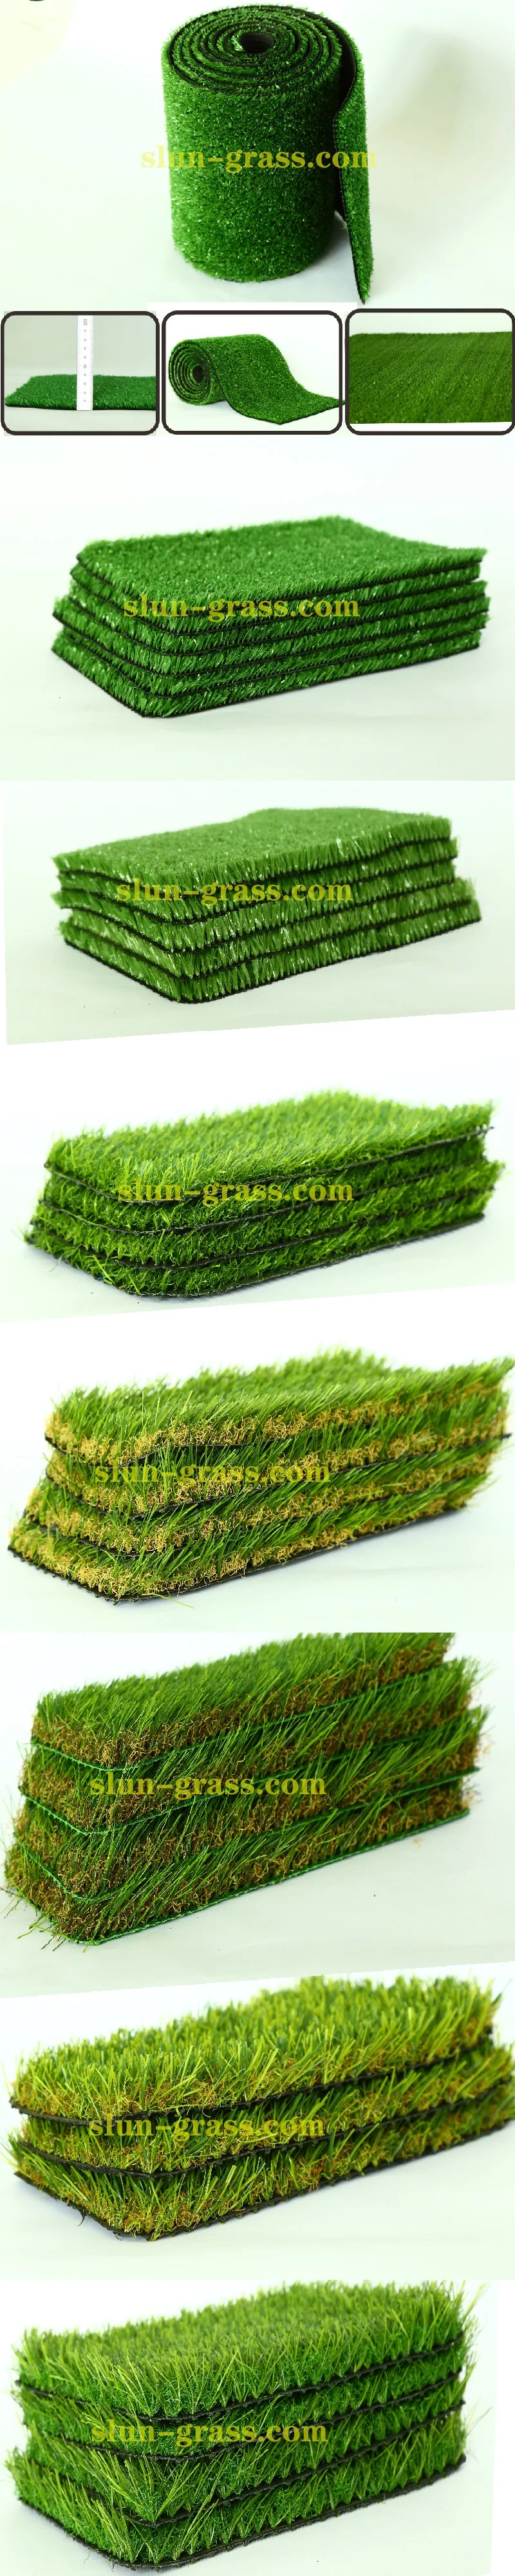 Backyard Artificial Grass Golf Grass Artificial Turf Putting Gree